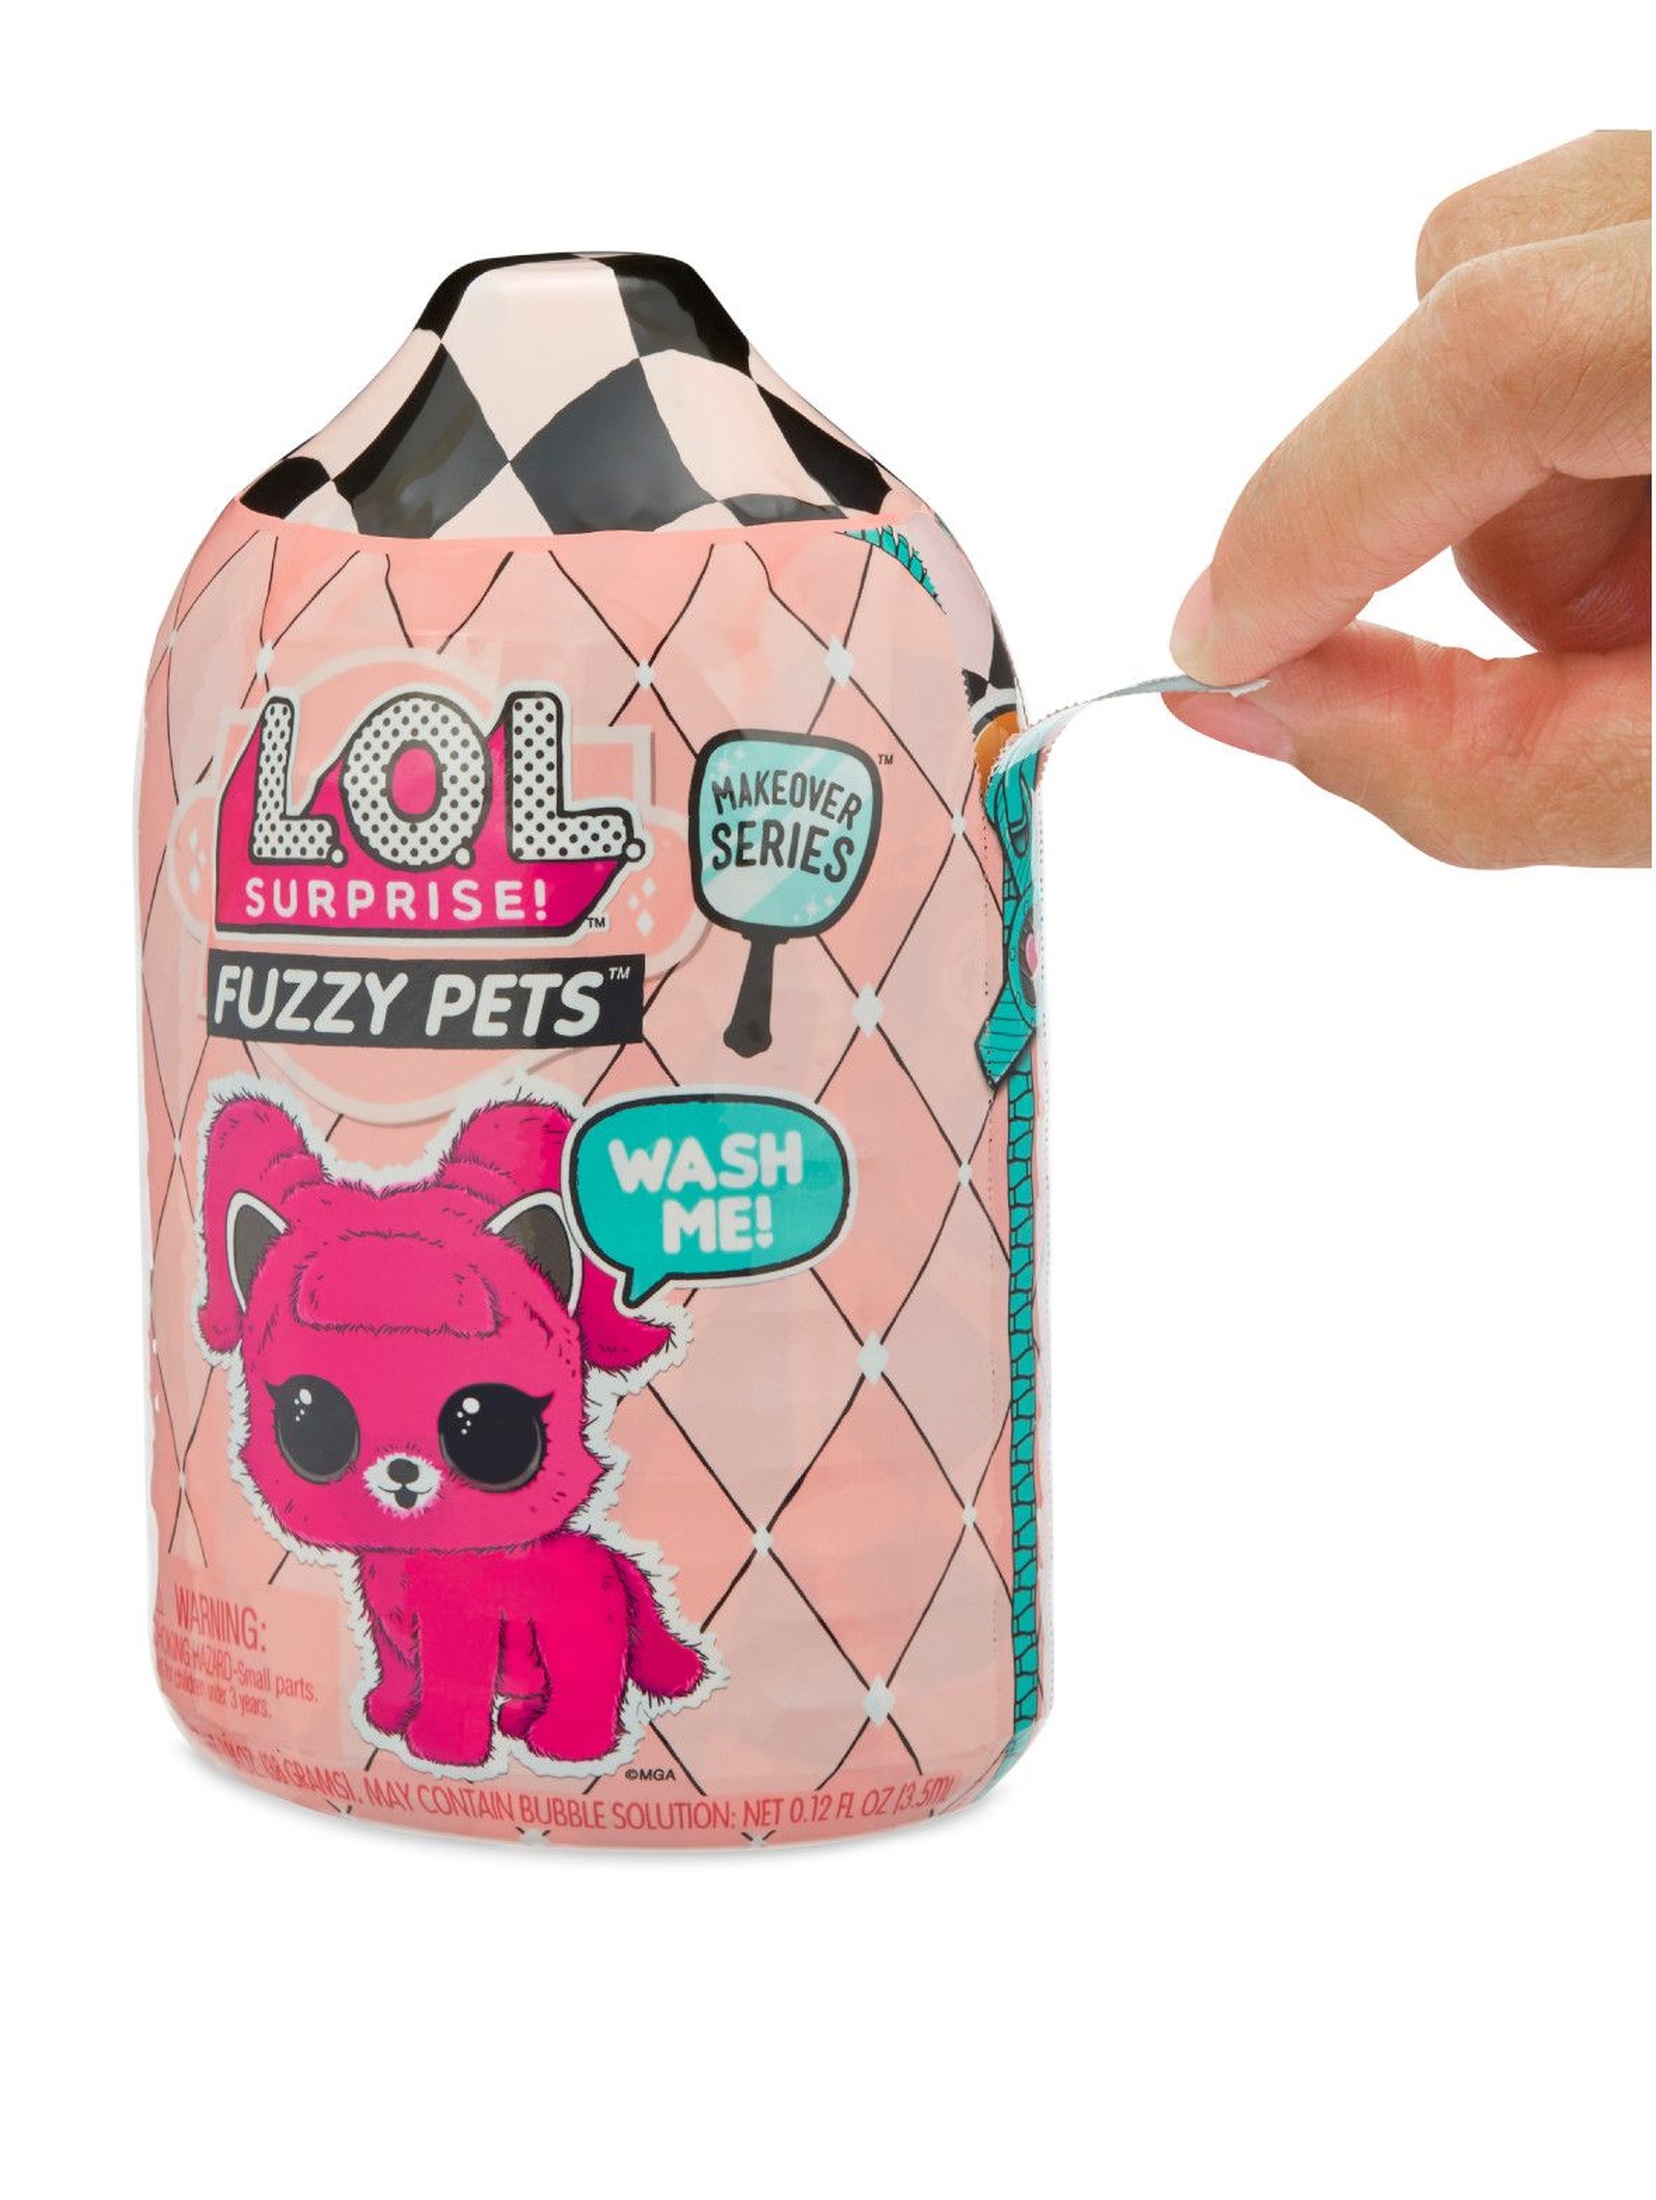 L.O.L. Surprise Fuzzy Pets Asst in PDQ